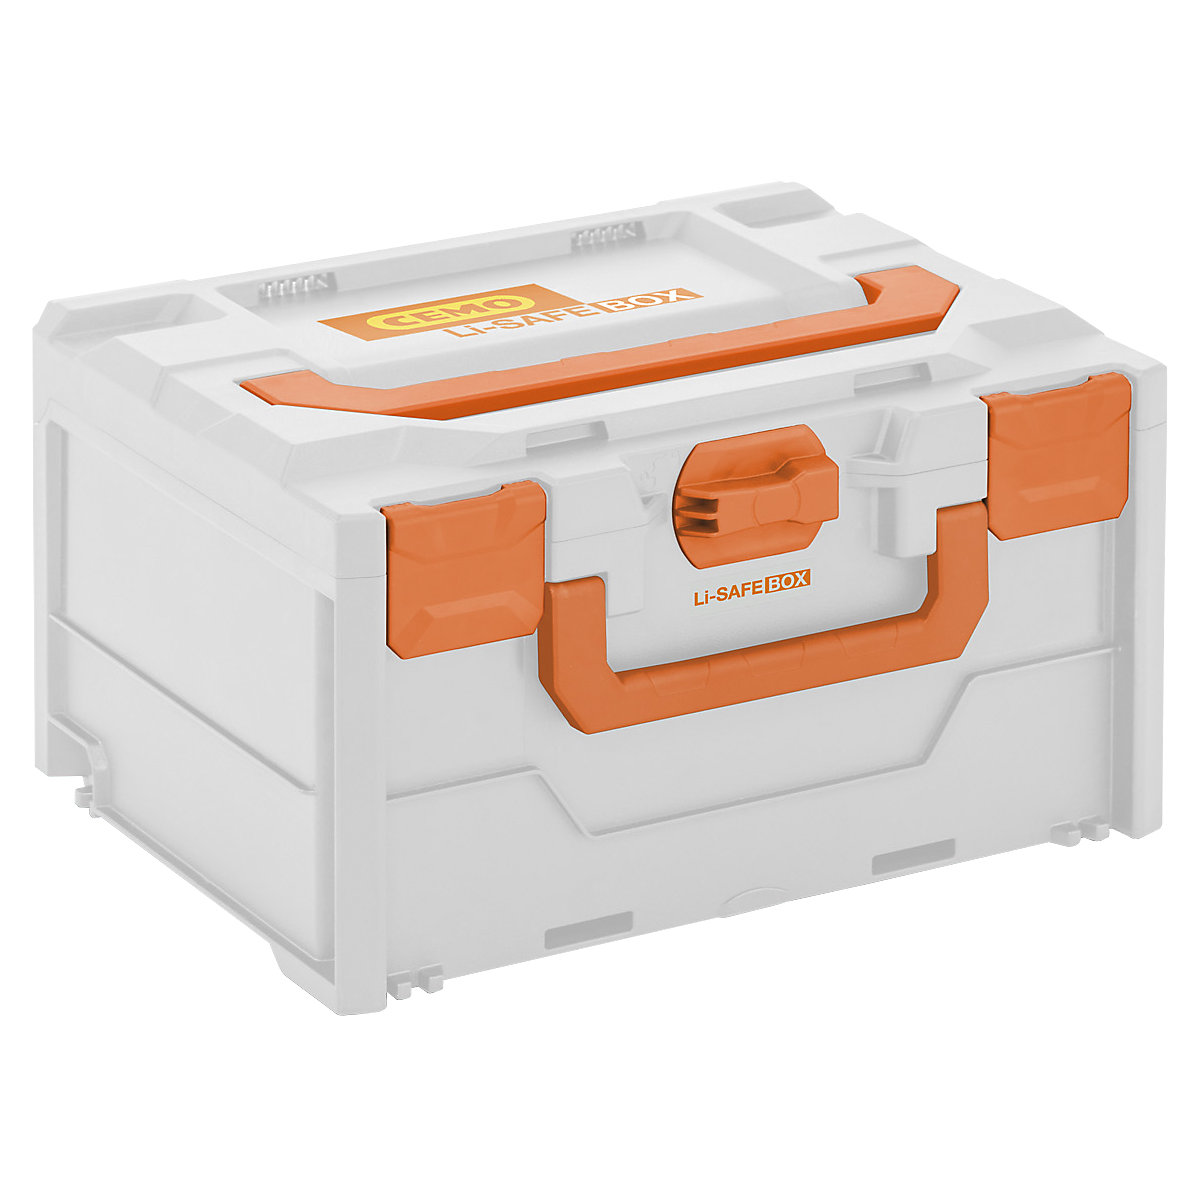 Caixa de proteção contra incêndios para baterias Li-SAFE - CEMO